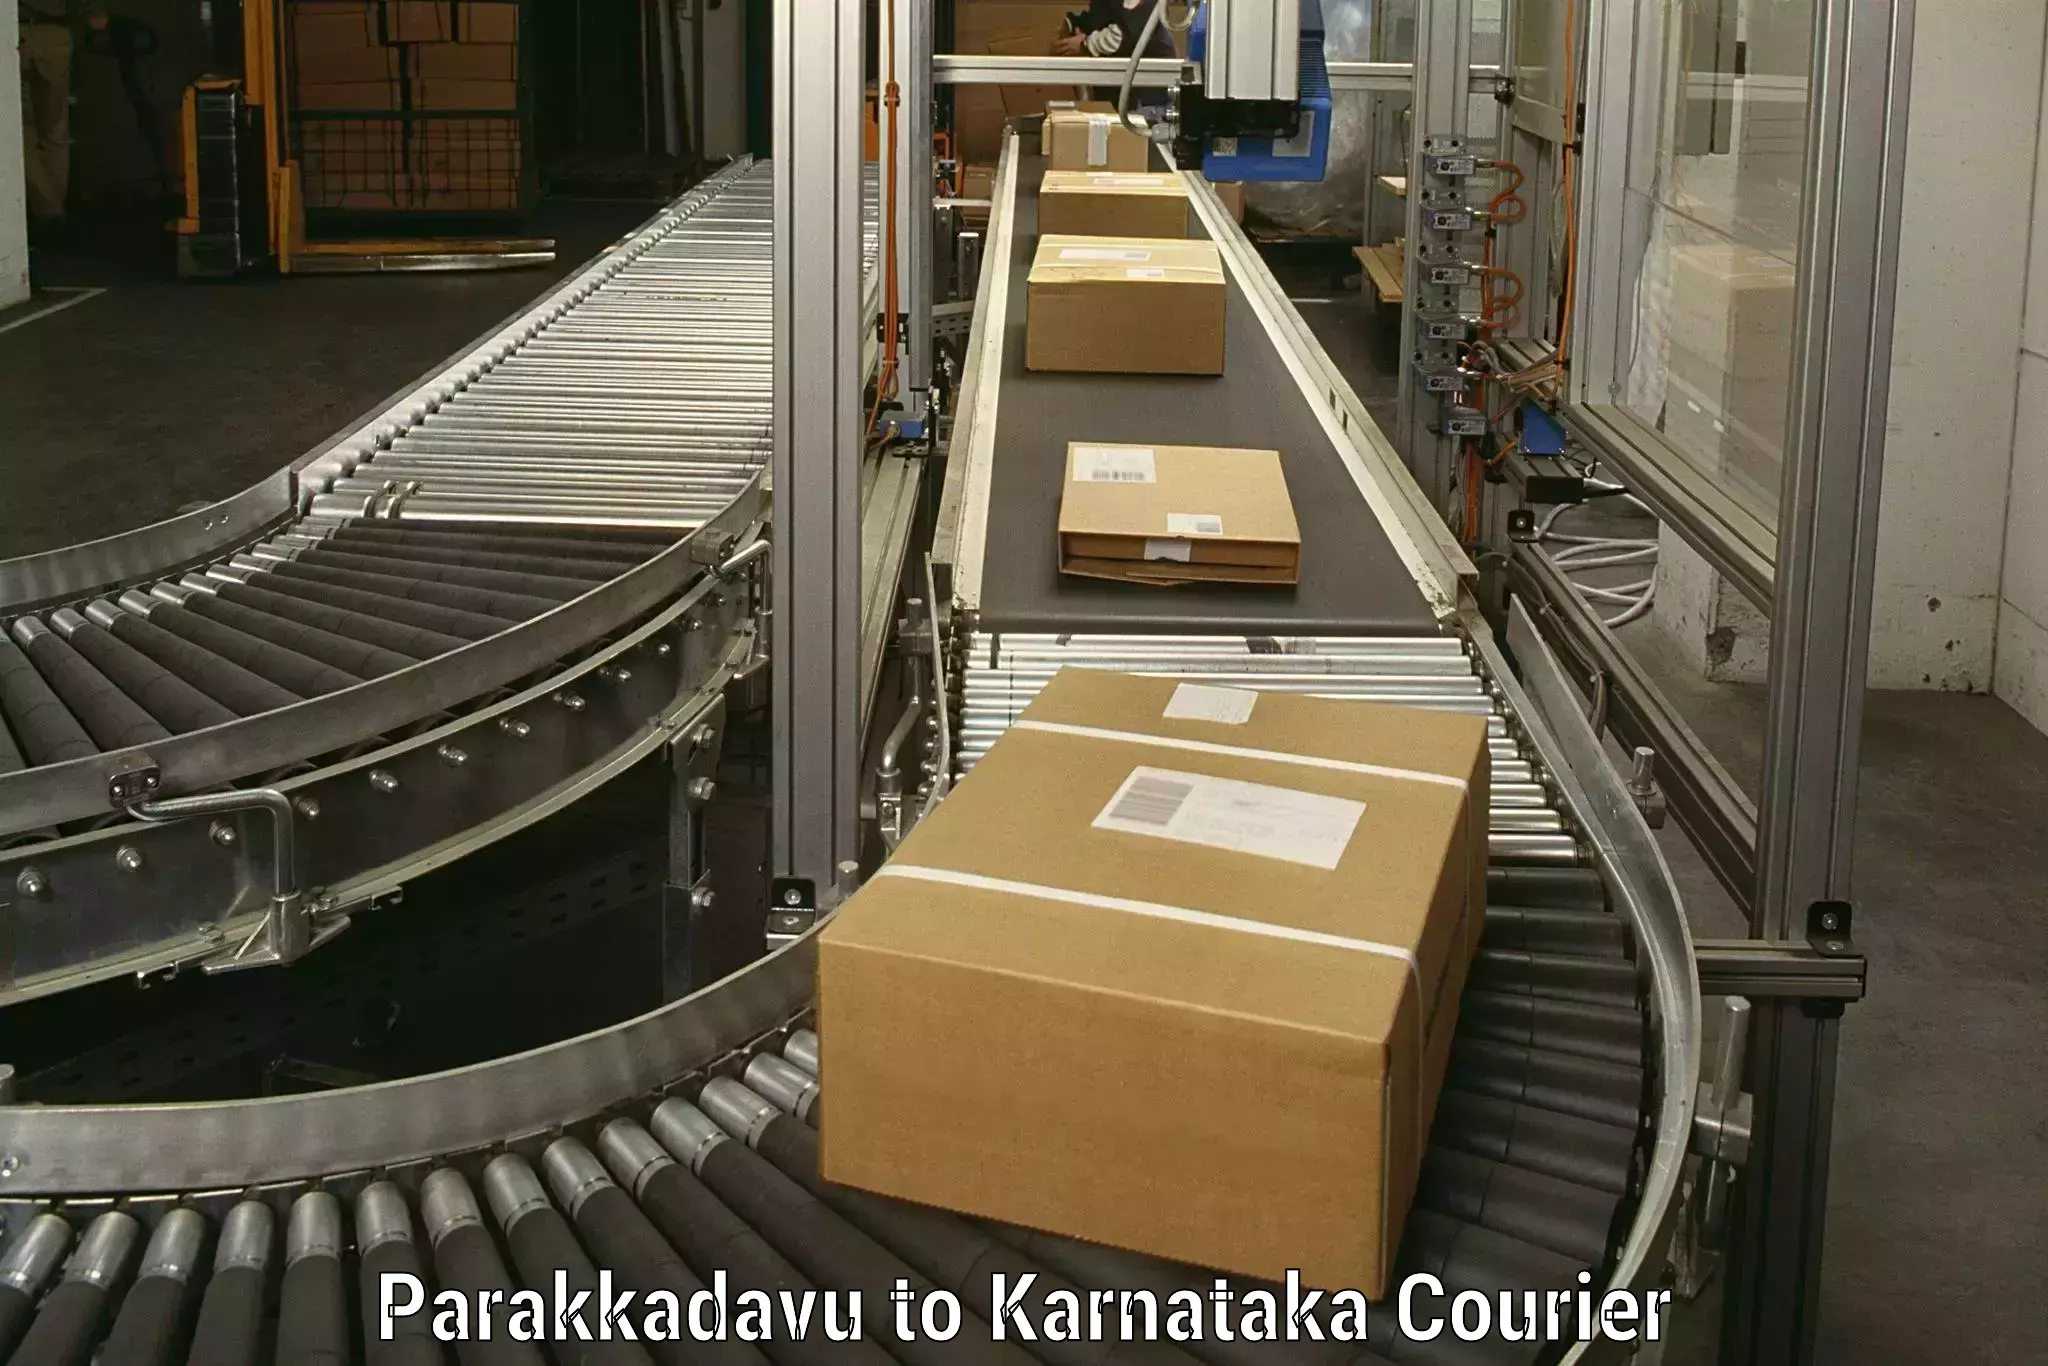 High-quality moving services Parakkadavu to Holesirigere